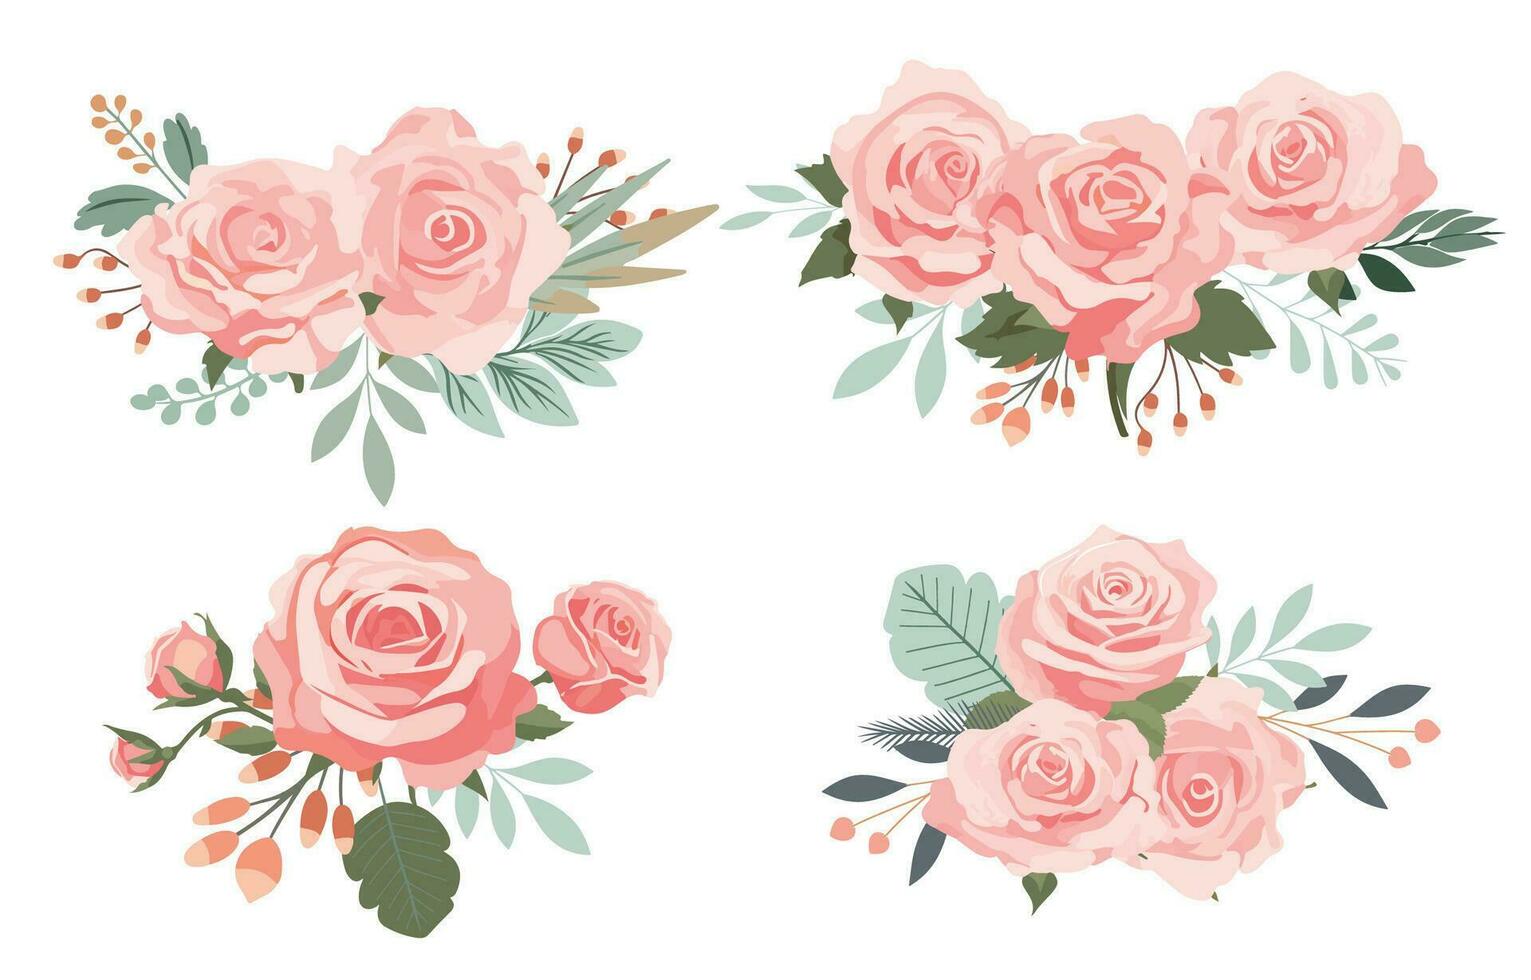 pink rose object element set with leaf.illustration vector for postcard,sticker